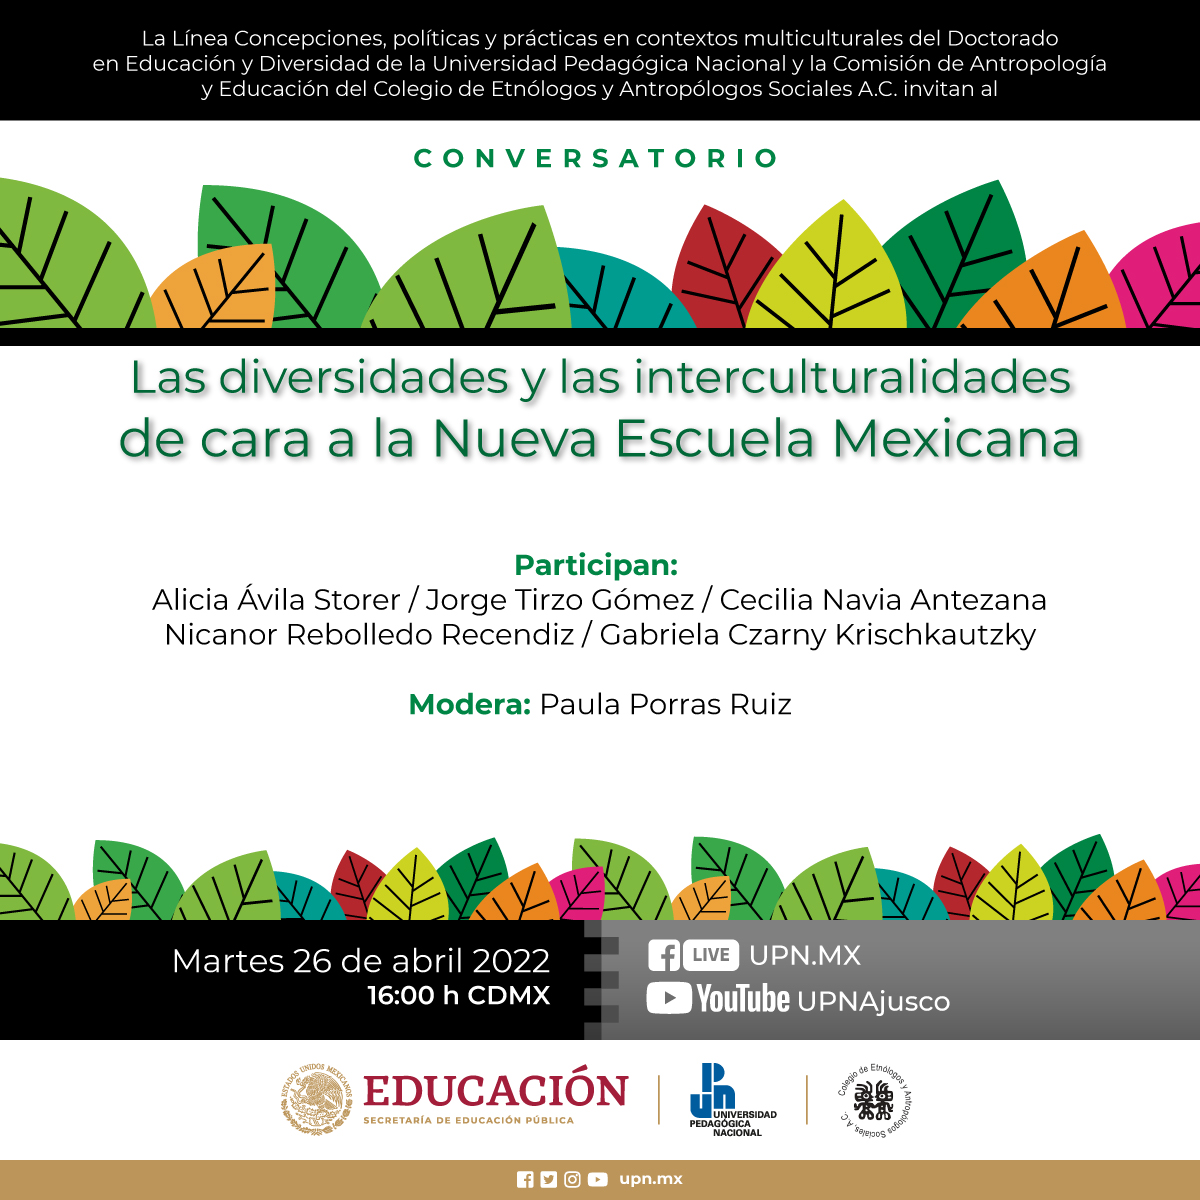 Las diversidades y las interculturalidades de cara a la Nueva Escuela Mexicana